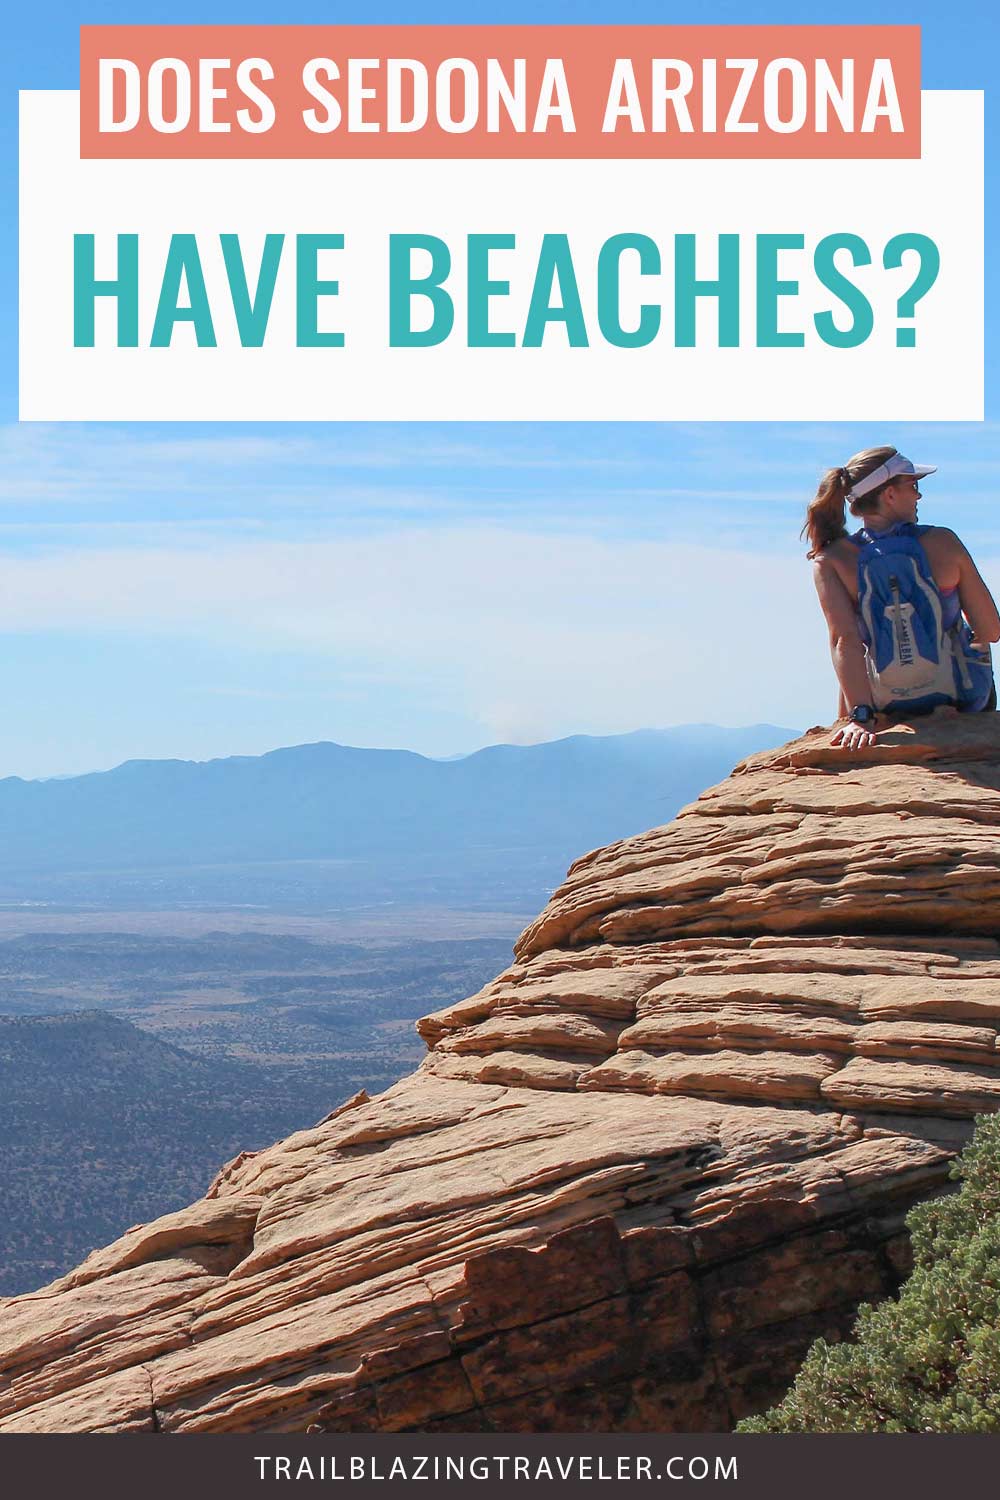 Does Sedona Arizona Have Beaches?